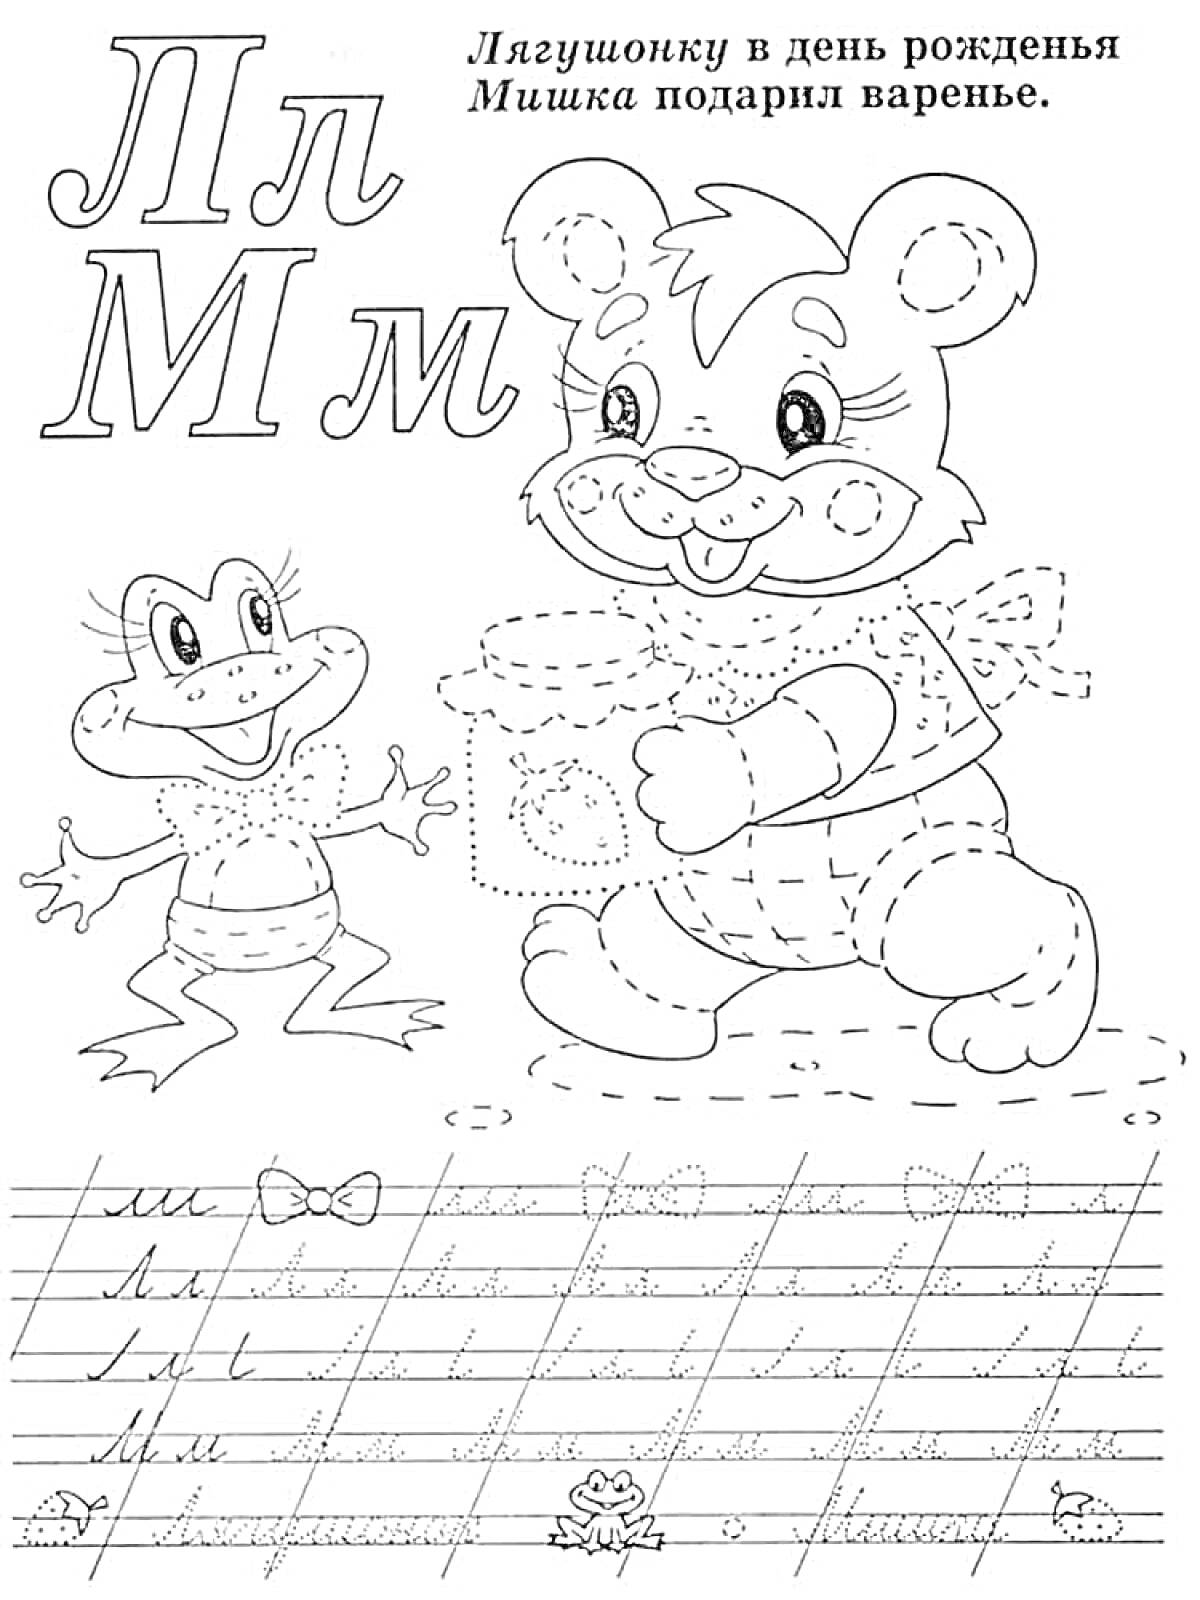 РаскраскаПрописи Буквы Л и М с рисунками лягушонка и мишки, а также фразой 